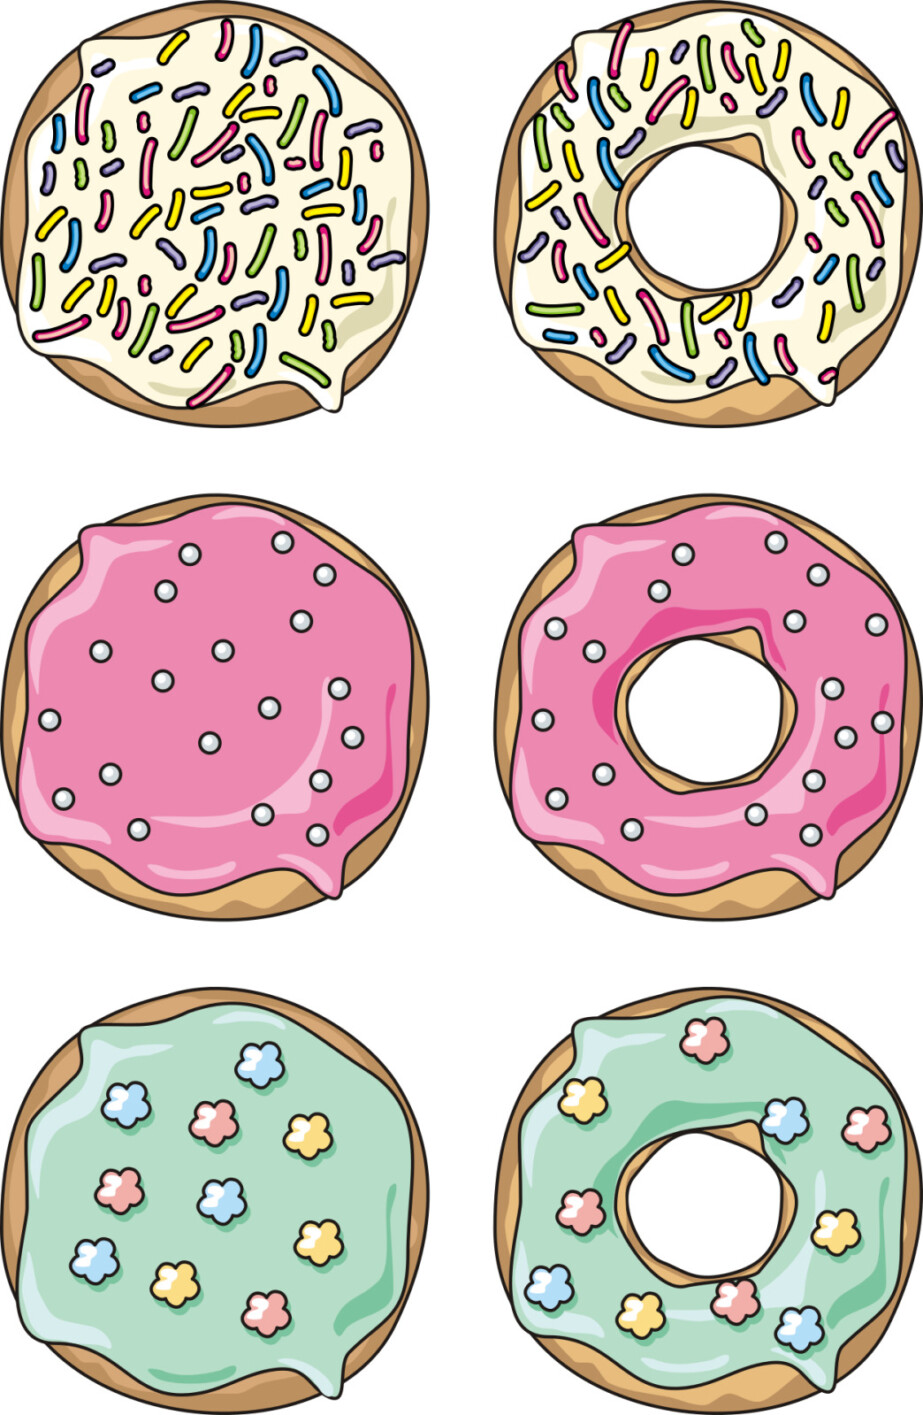 Delicious Donuts - Original image